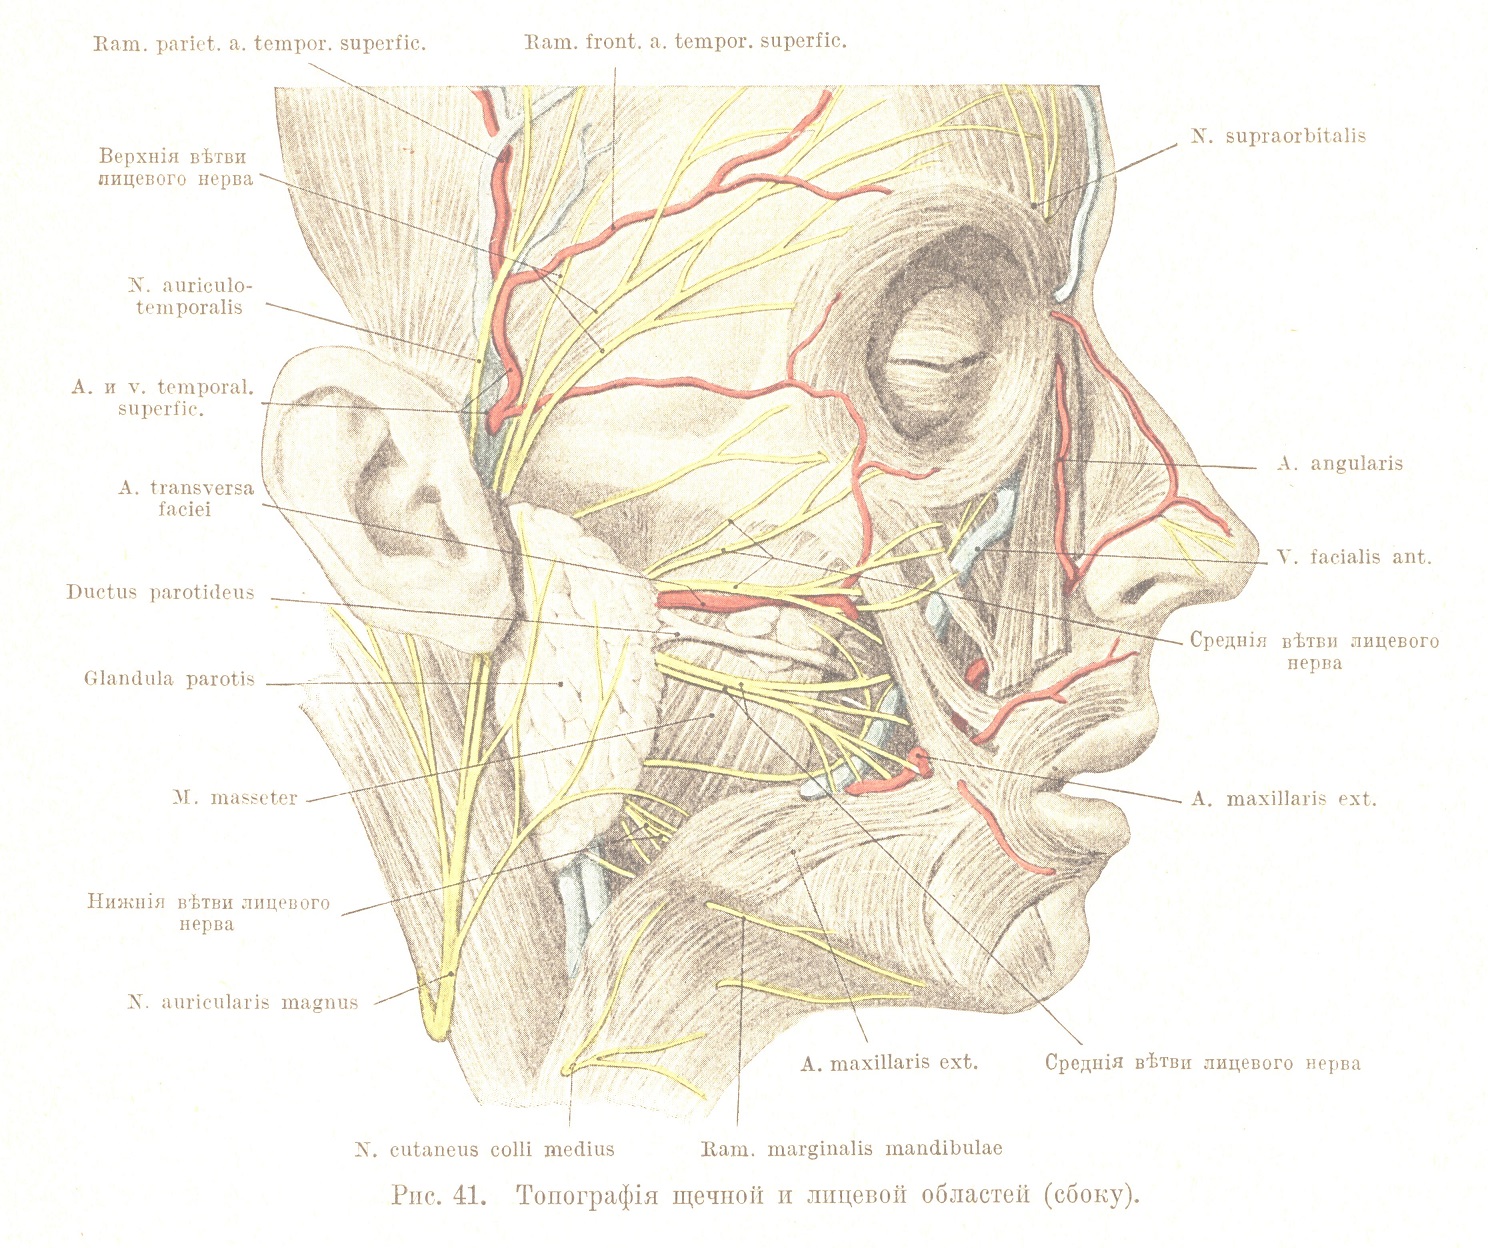 Топографія щечной и лицевой областей (сбоку)